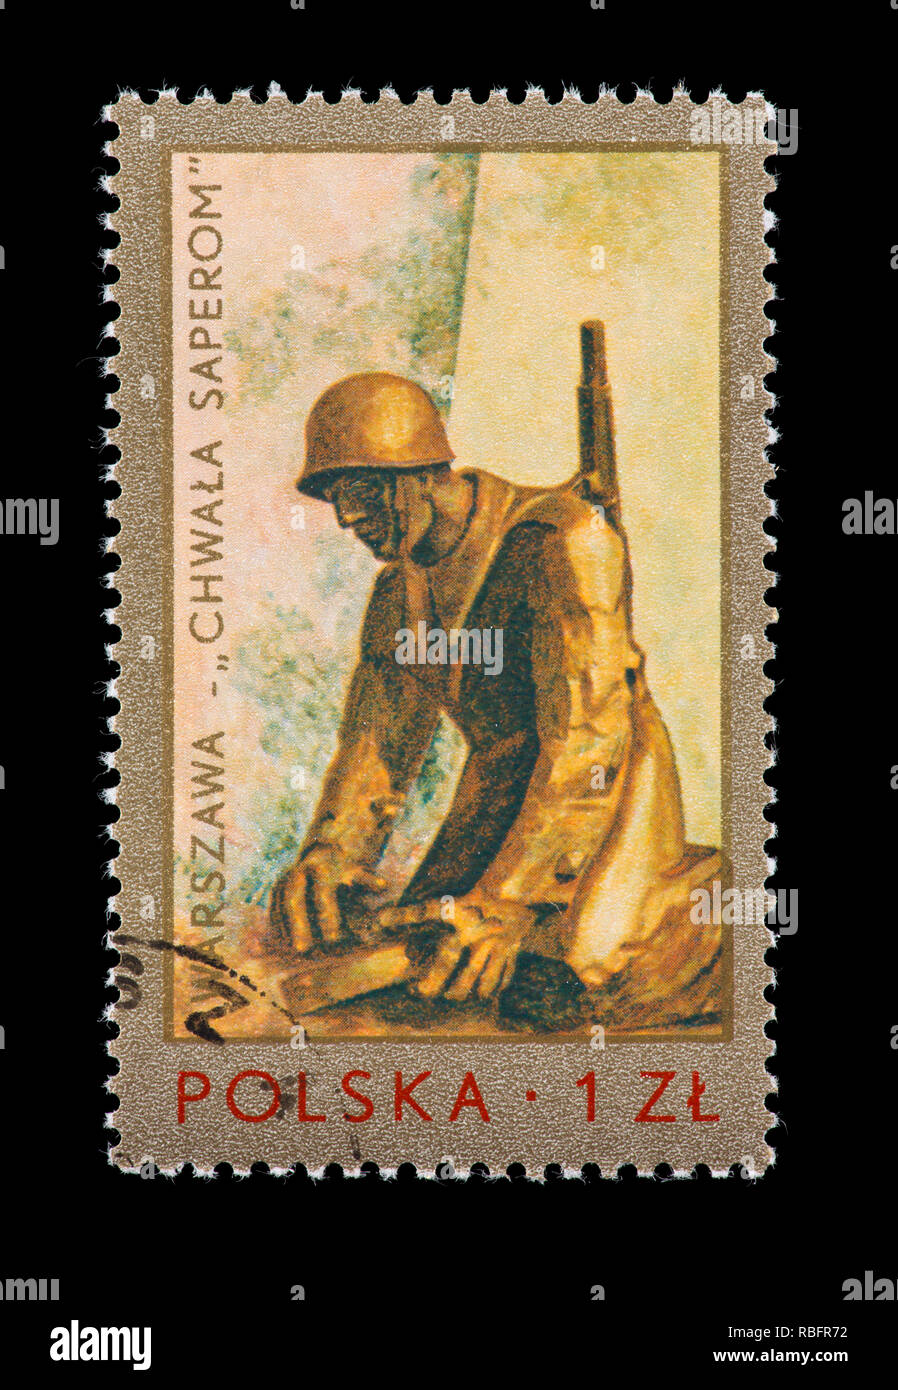 Sello de Polonia Stanislaw Kulow escultura representando los zapadores' Monumento en Varsovia, 30'th aniversario del fin de la Segunda Guerra Mundial. Foto de stock